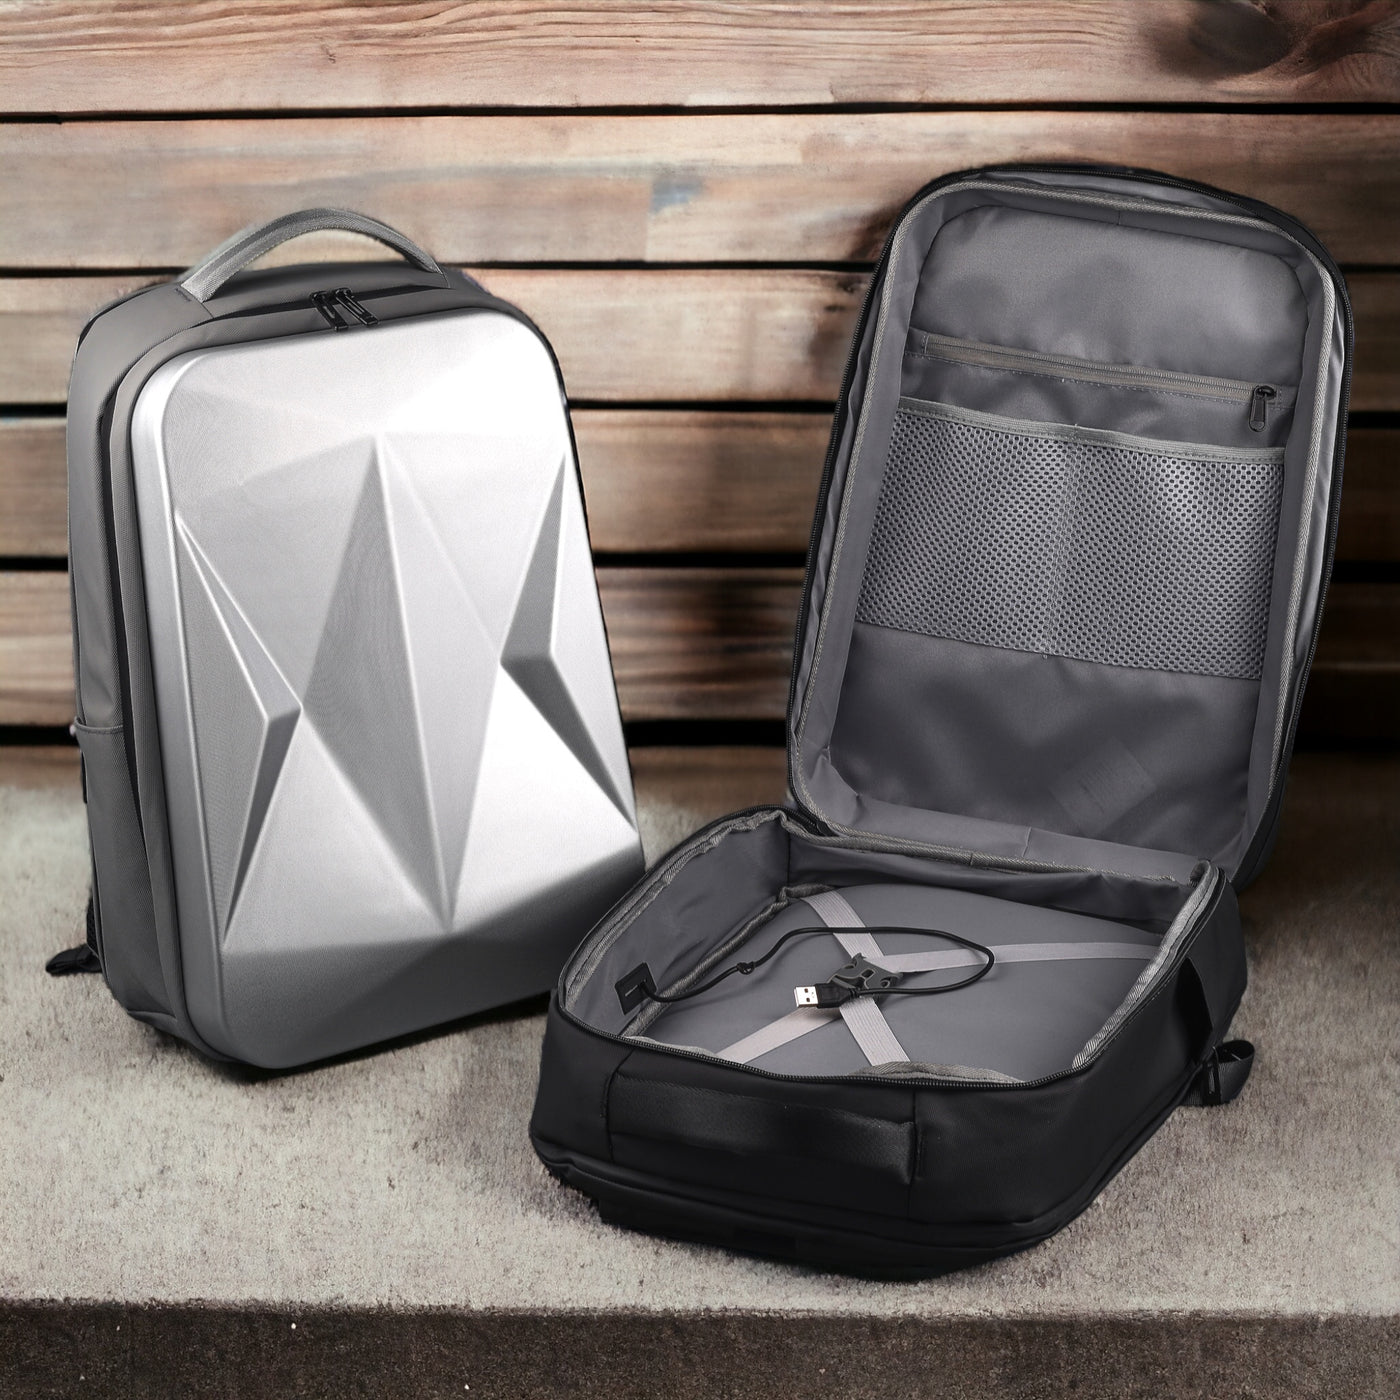 Hardshell Laptop Travel Backpack